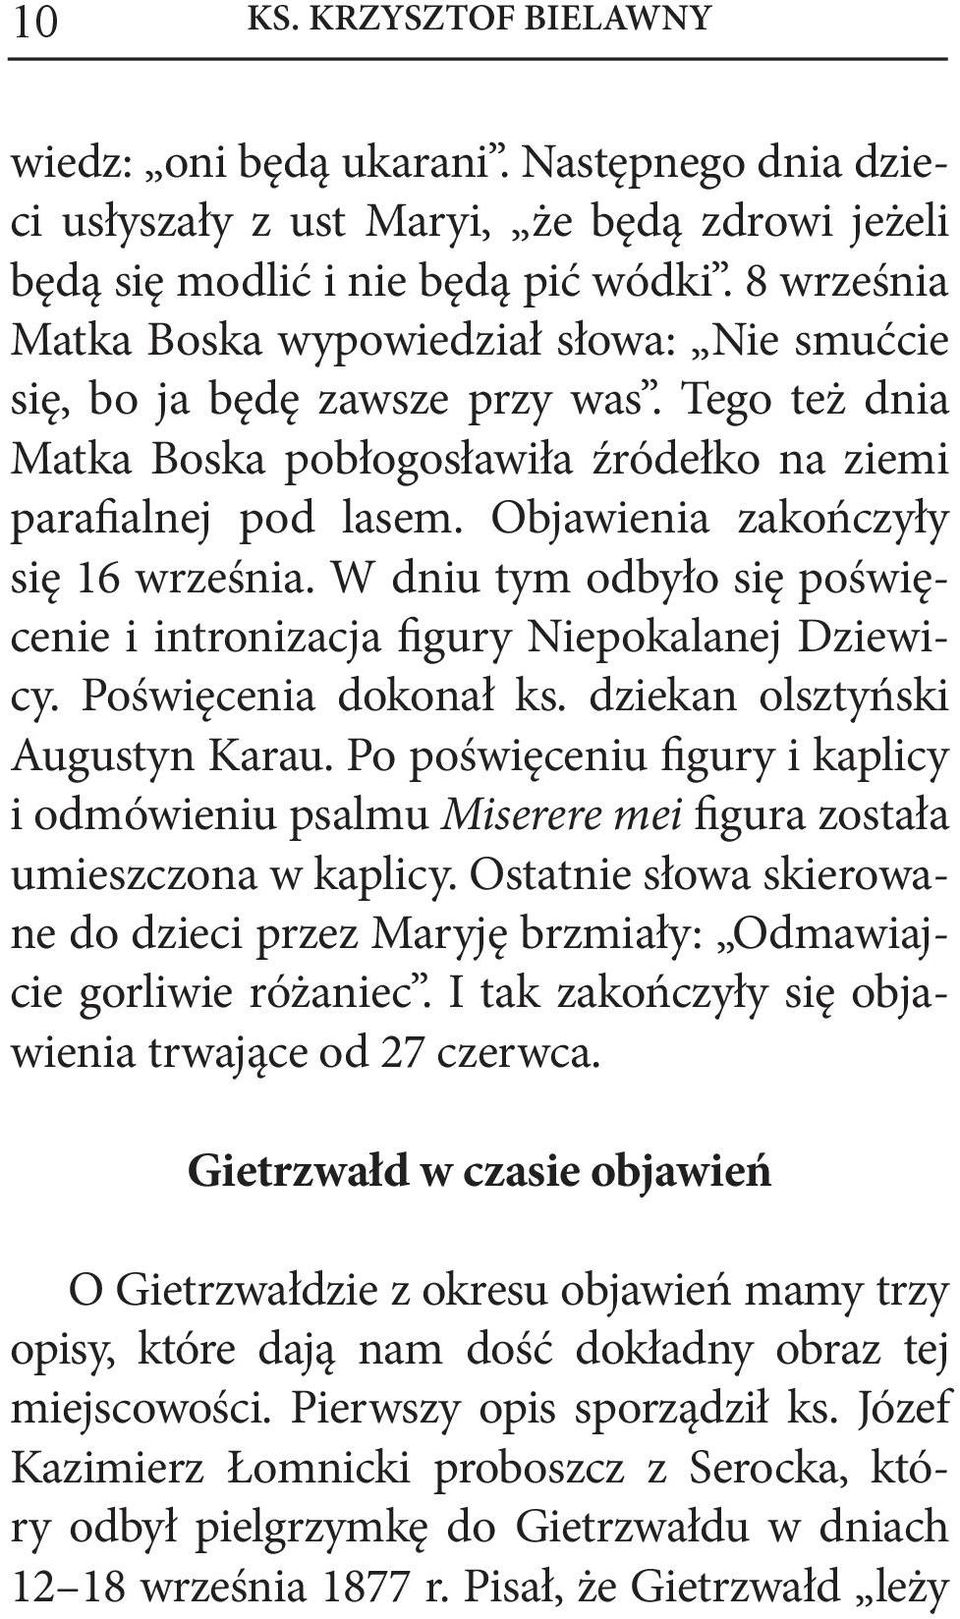 Objawienia zakończyły się 16 września. W dniu tym odbyło się poświęcenie i intronizacja figury Niepokalanej Dziewicy. Poświęcenia dokonał ks. dziekan olsztyński Augustyn Karau.